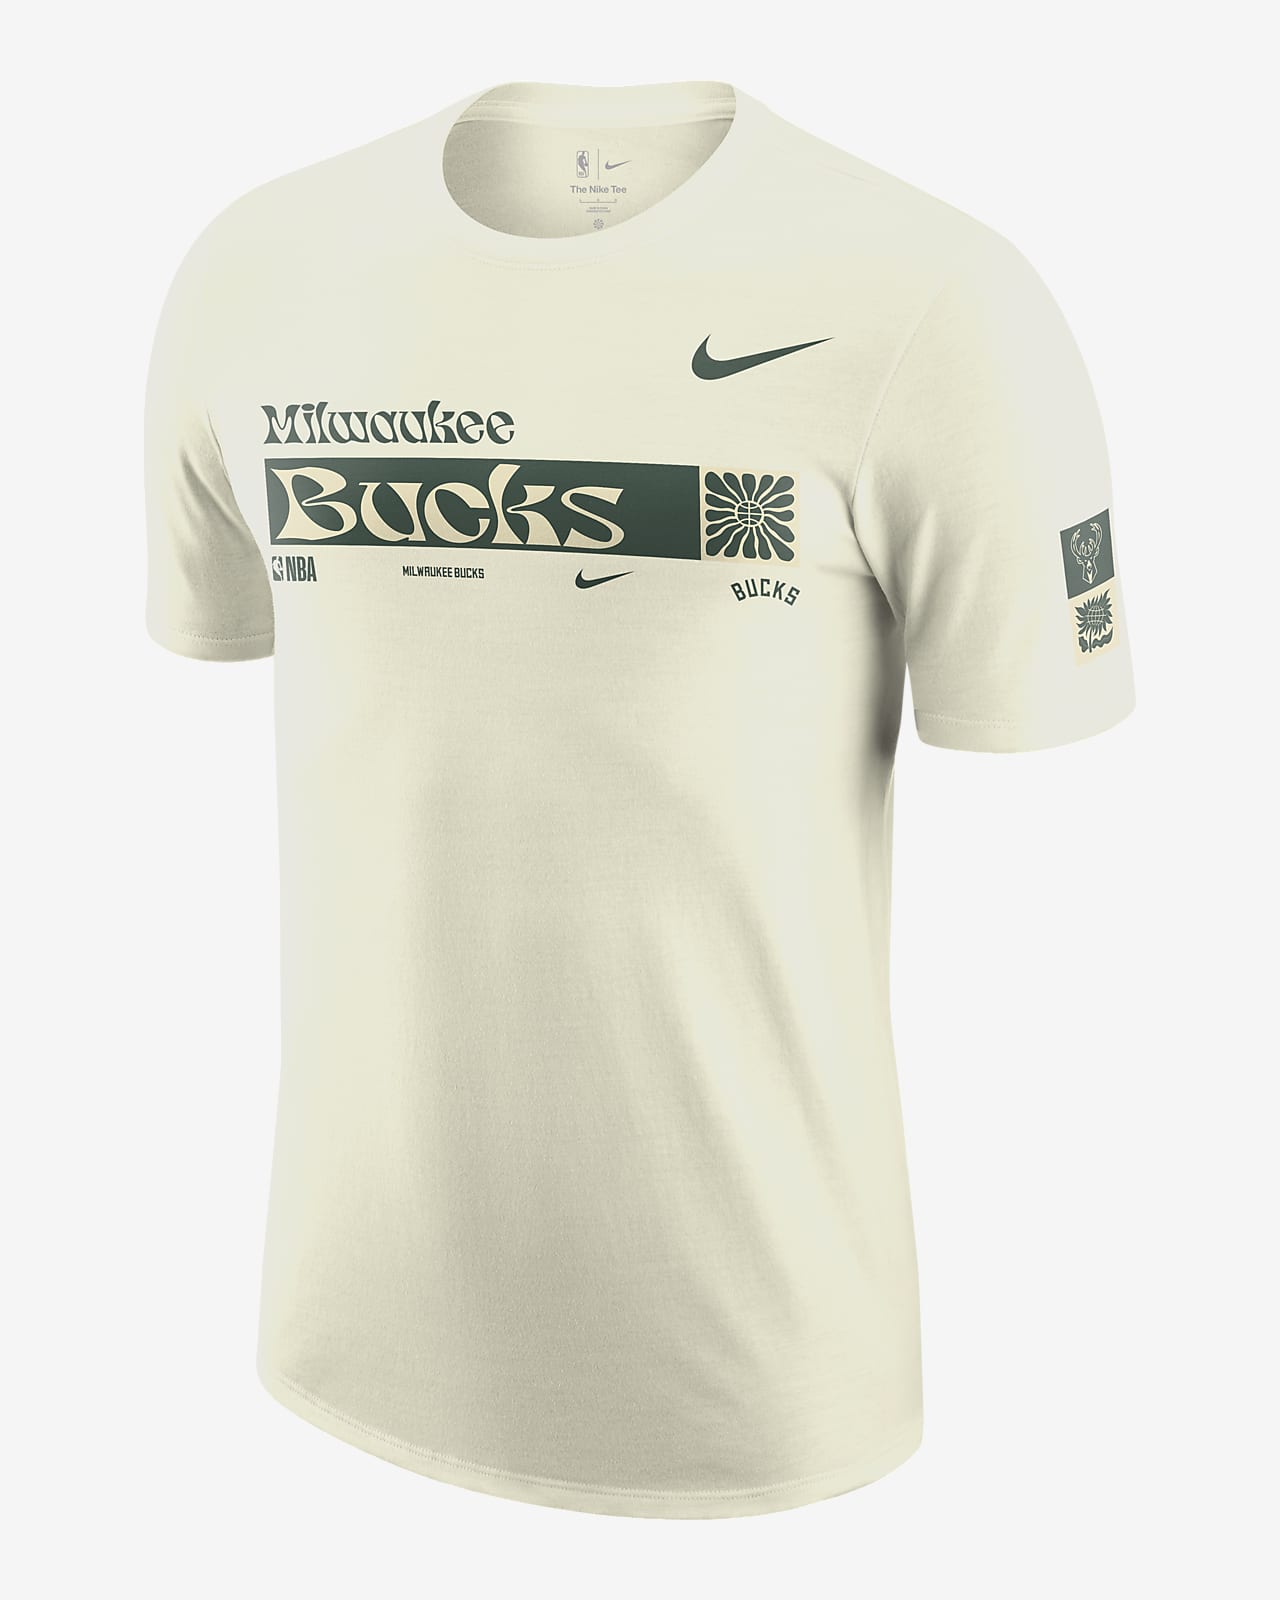 Ανδρικό T-Shirt Nike NBA Μιλγουόκι Μπακς Essential